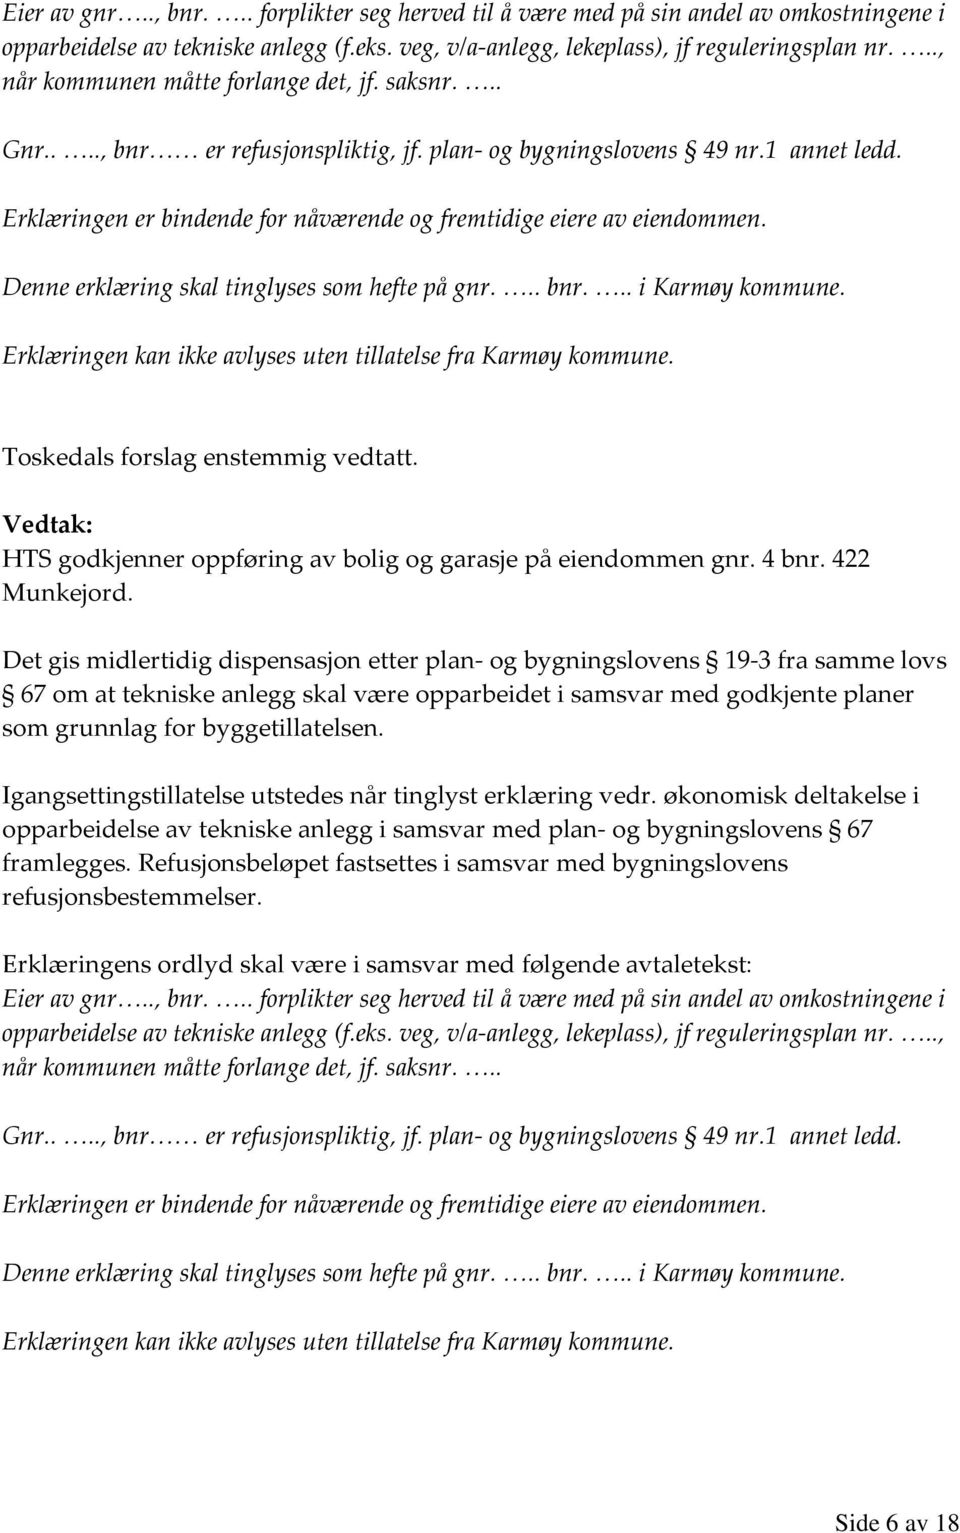 Erklæringen er bindende for nåværende og fremtidige eiere av eiendommen. Denne erklæring skal tinglyses som hefte på gnr... bnr... i Karmøy kommune.